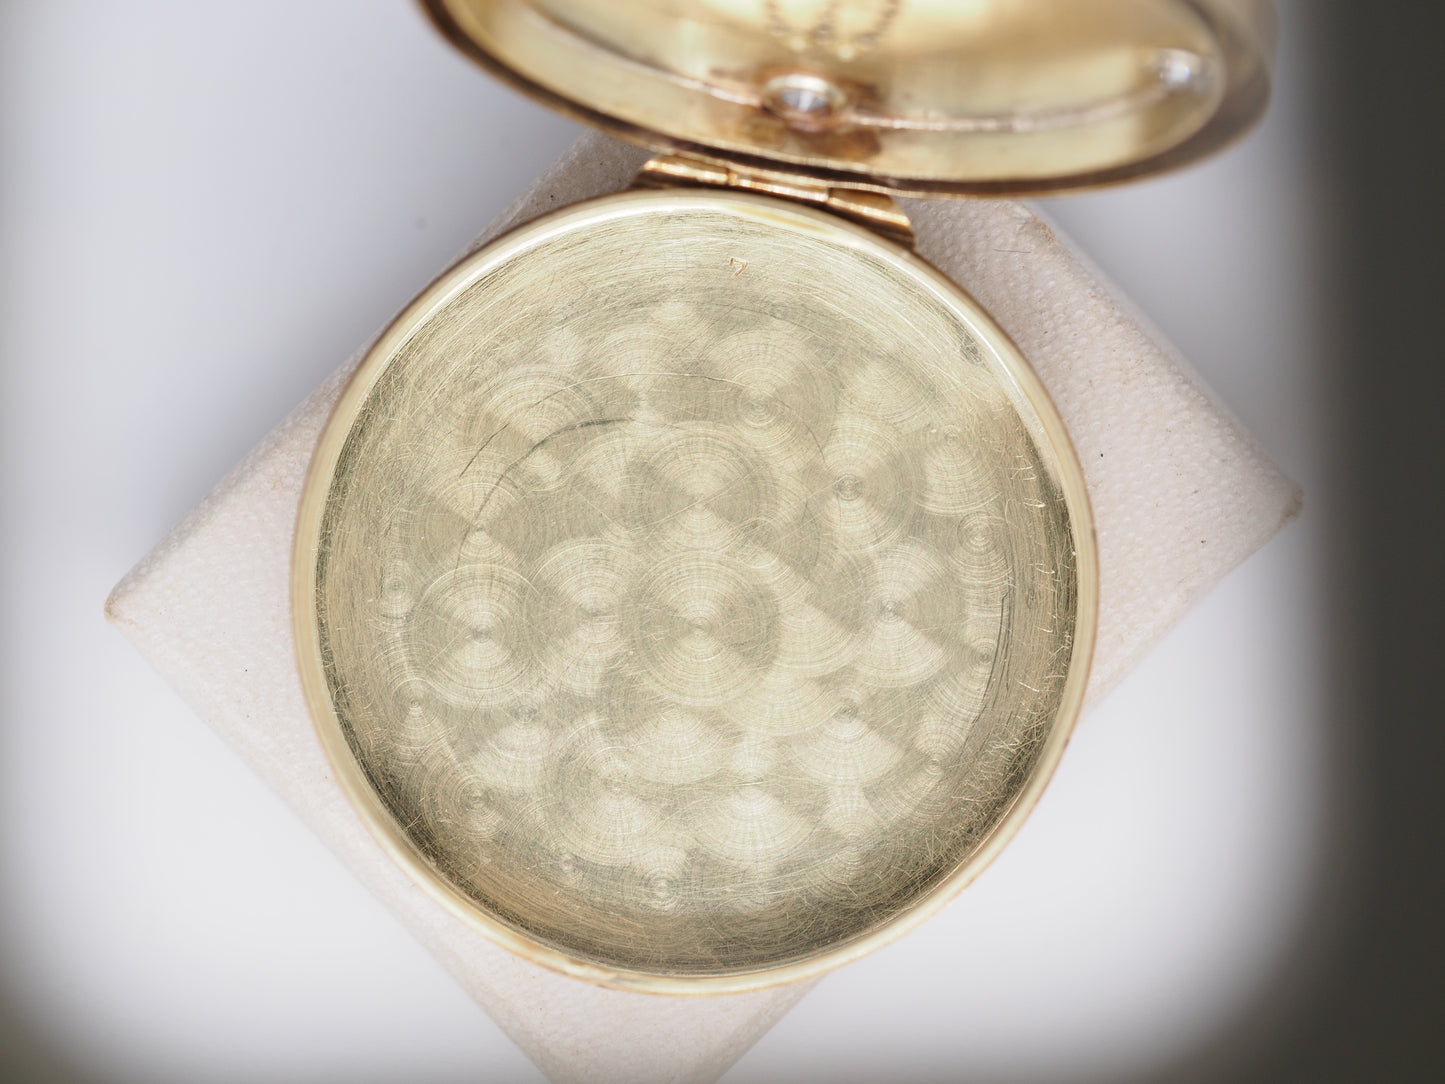 14K Yellow Gold Edwardian Pill Box Pendant with Diamonds